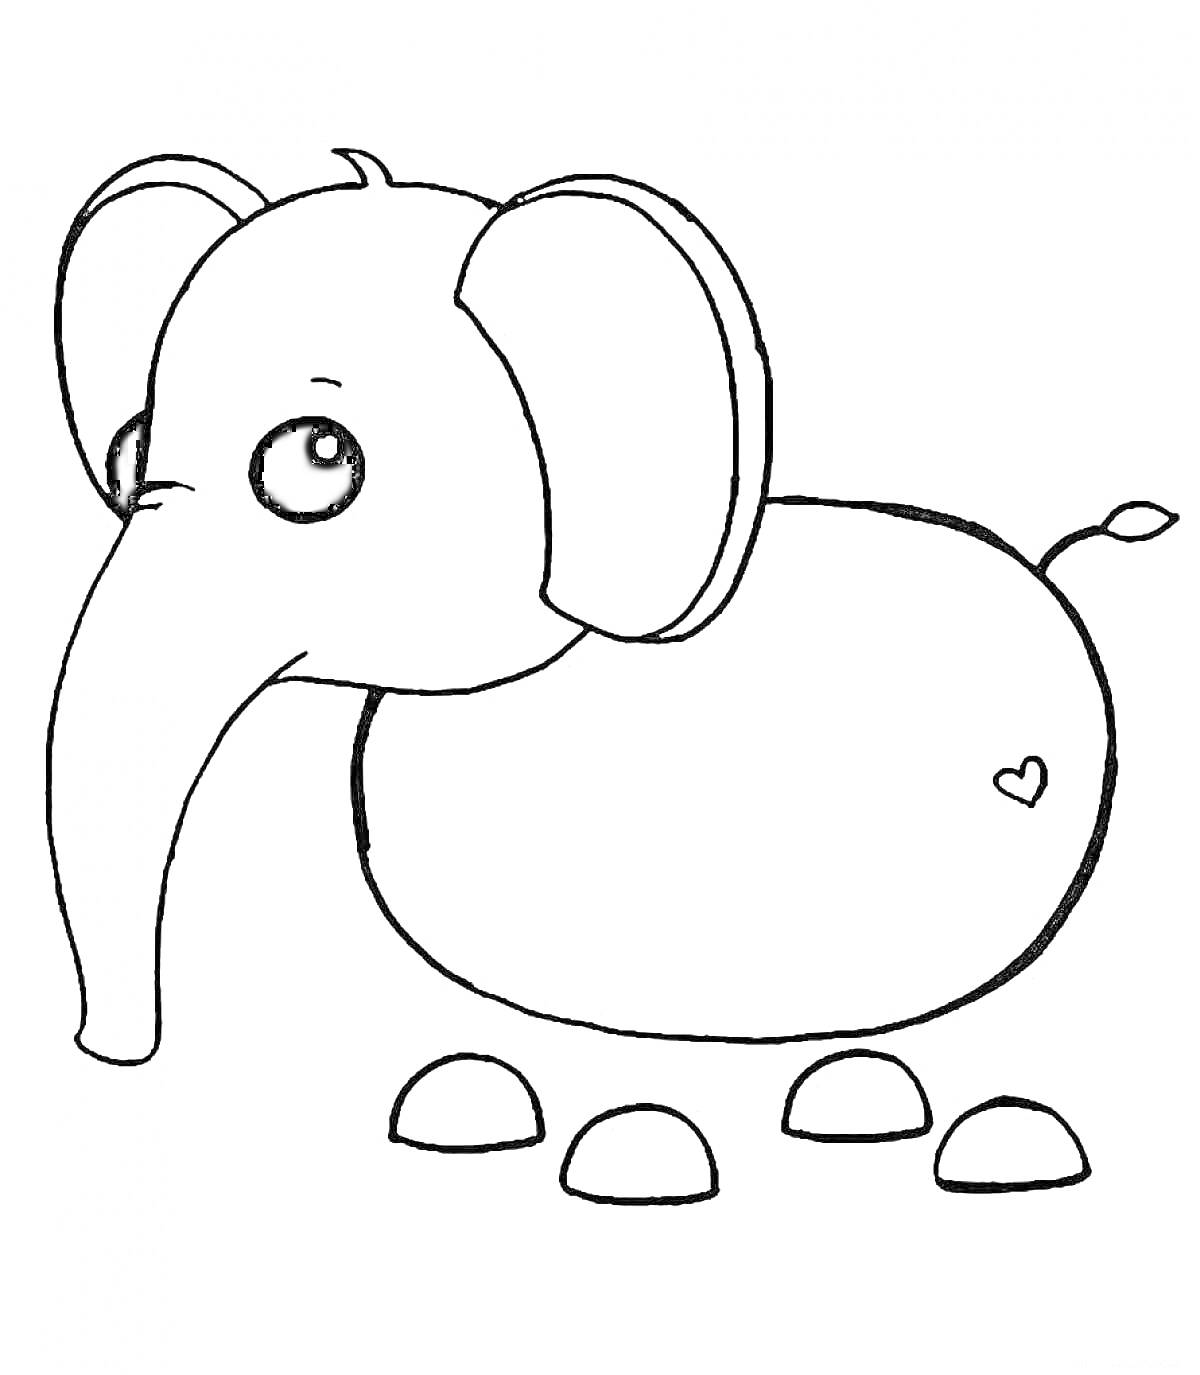 Раскраска Слон из Адопт Ми с сердечком и четырьмя подушечками лап